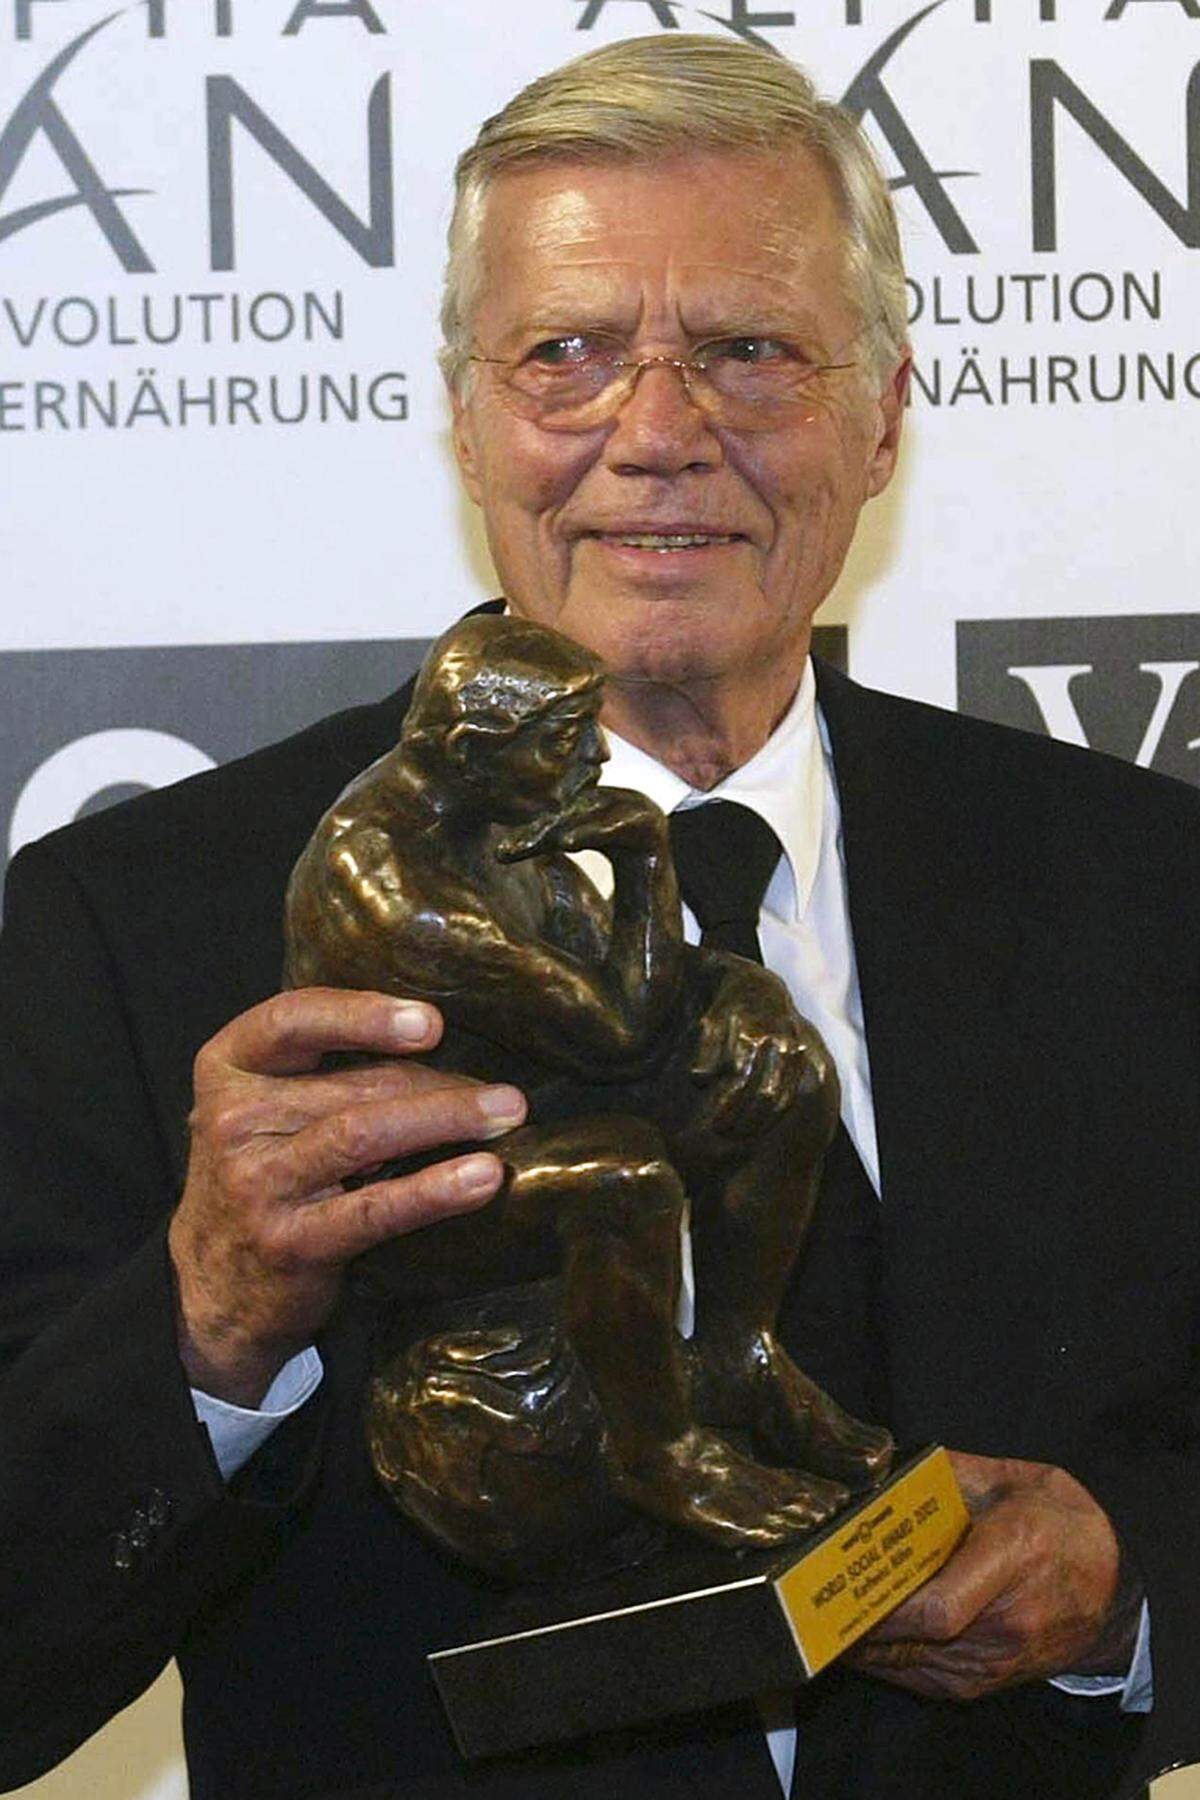 Für seinen jahrzehntelangen Einsatz im ostafrikanischen Land erhielt Karlheinz Böhm zahlreiche Auszeichnungen, darunter den World Award, den UNESCO-Ehrenpreis sowie das Ehrenzeichen für Verdienste um die Republik Österreich.